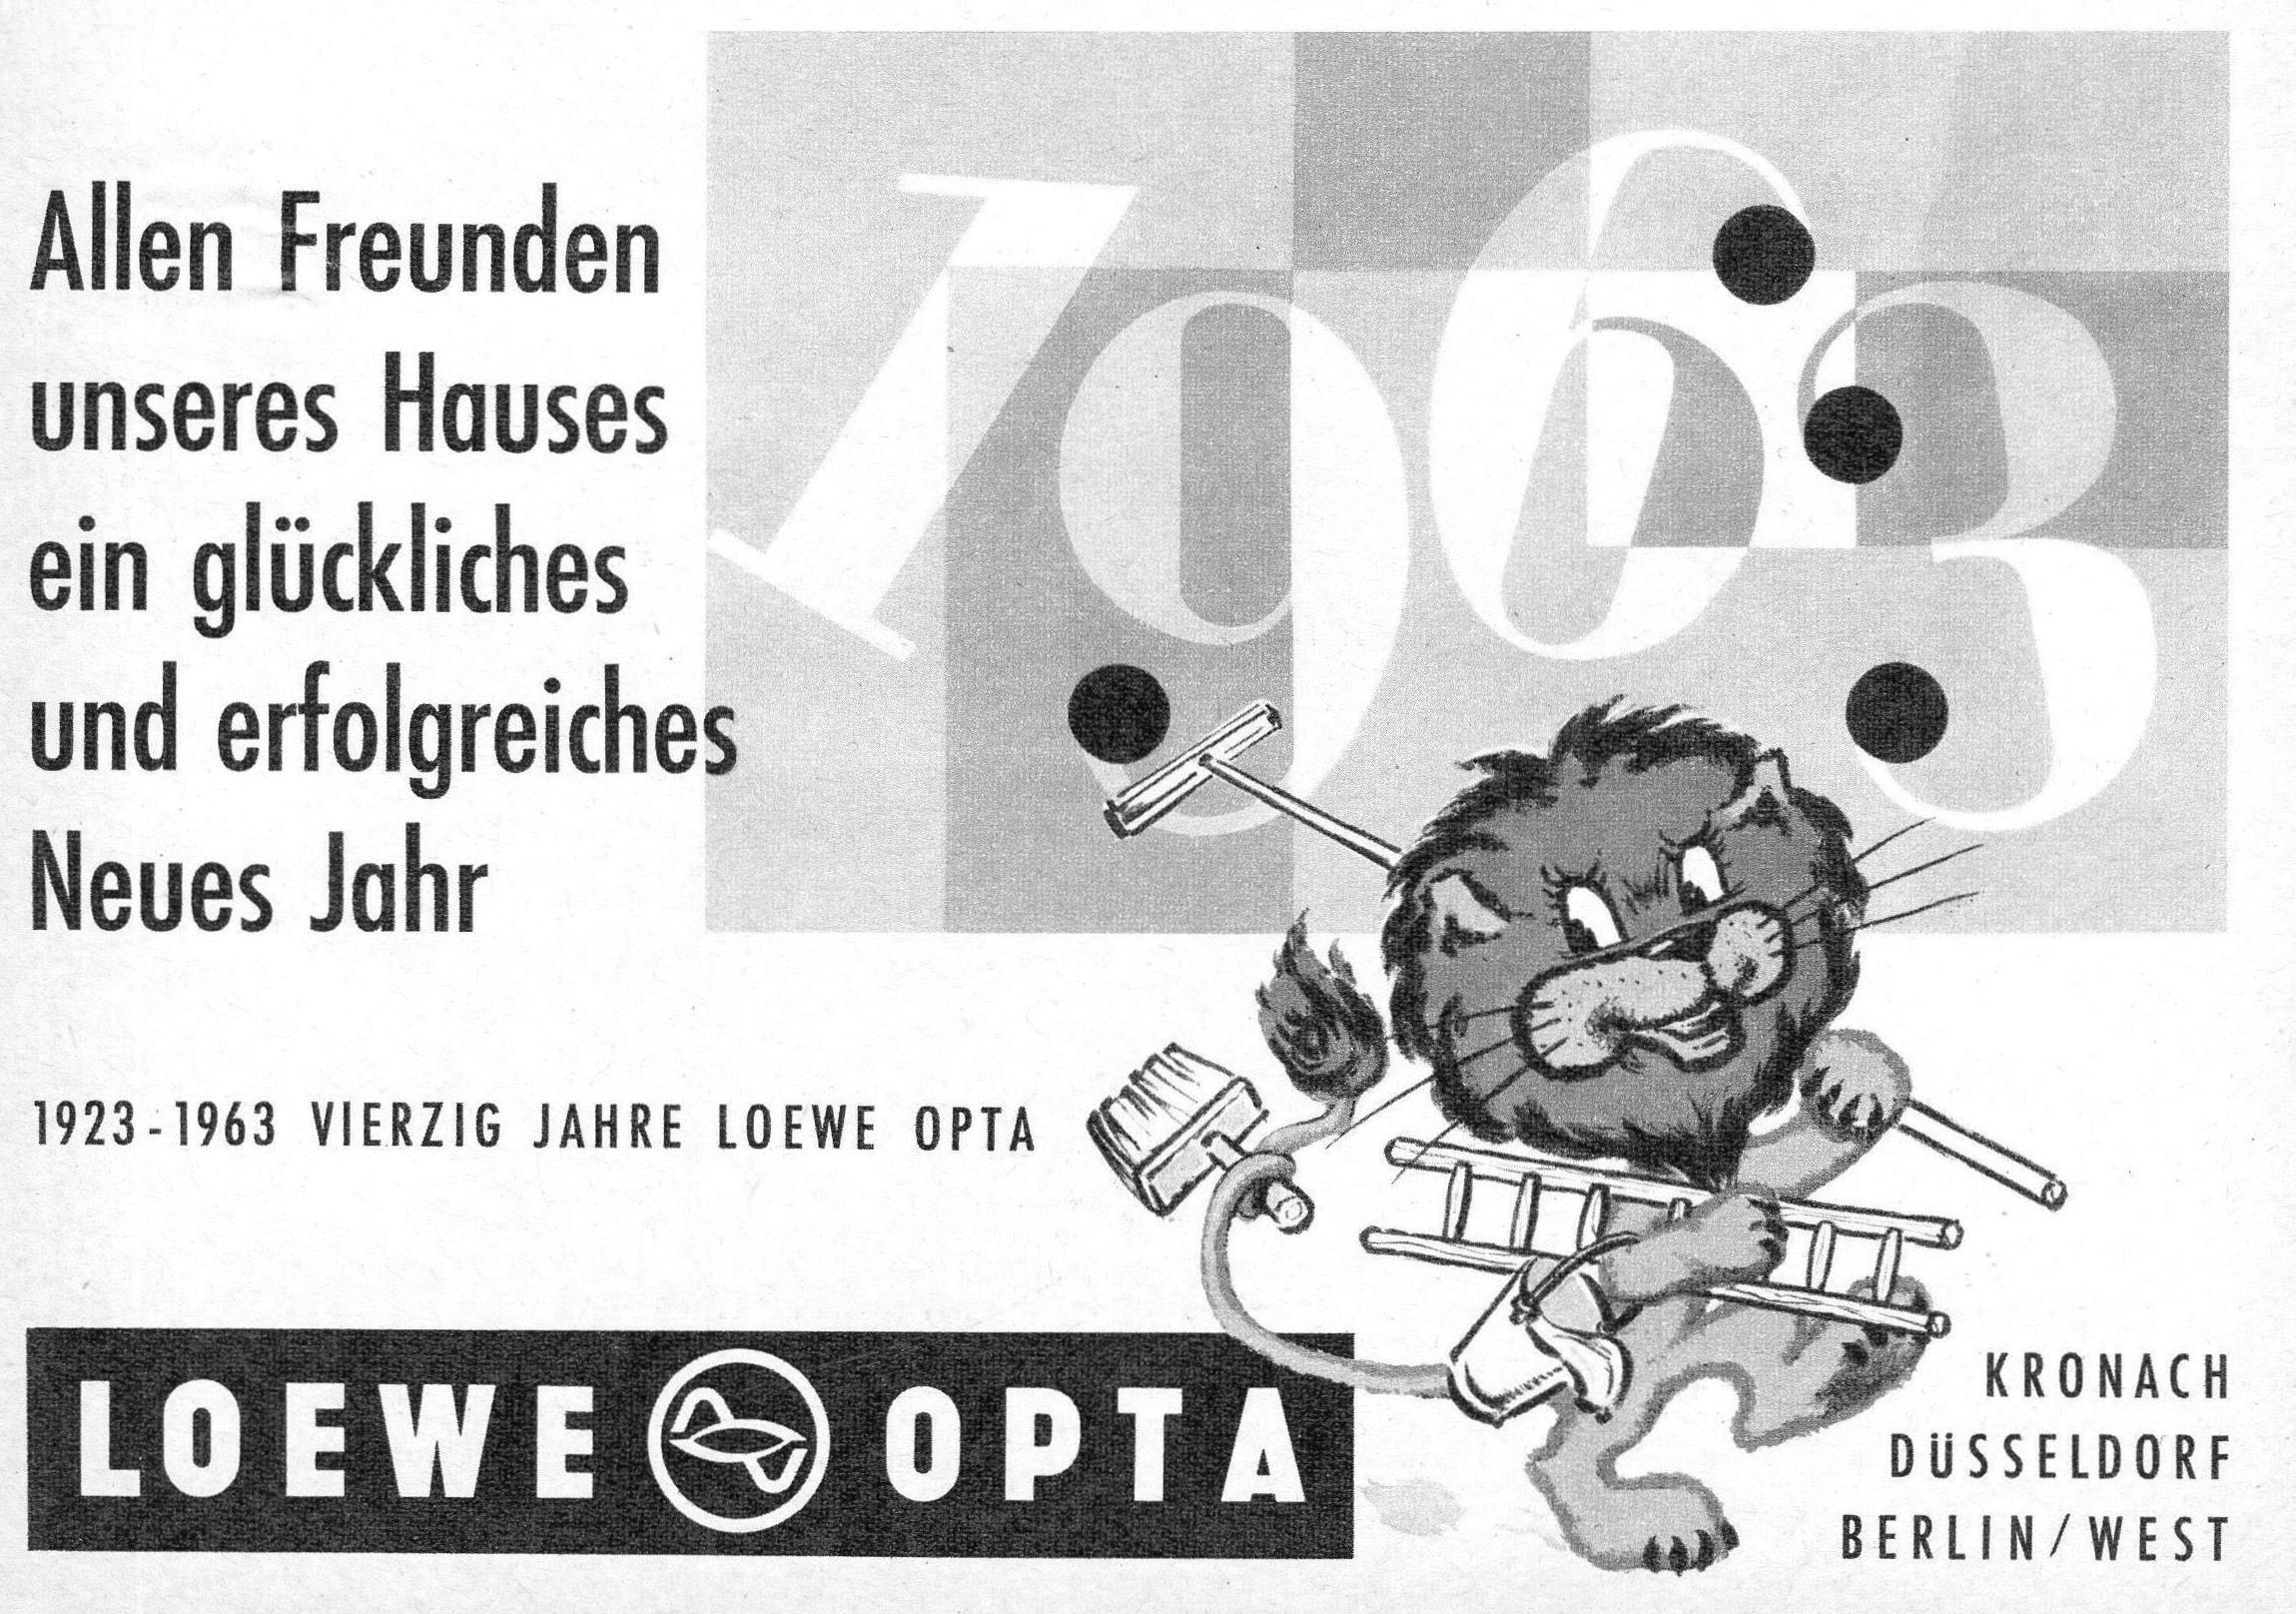 Loewe 1963 404.jpg